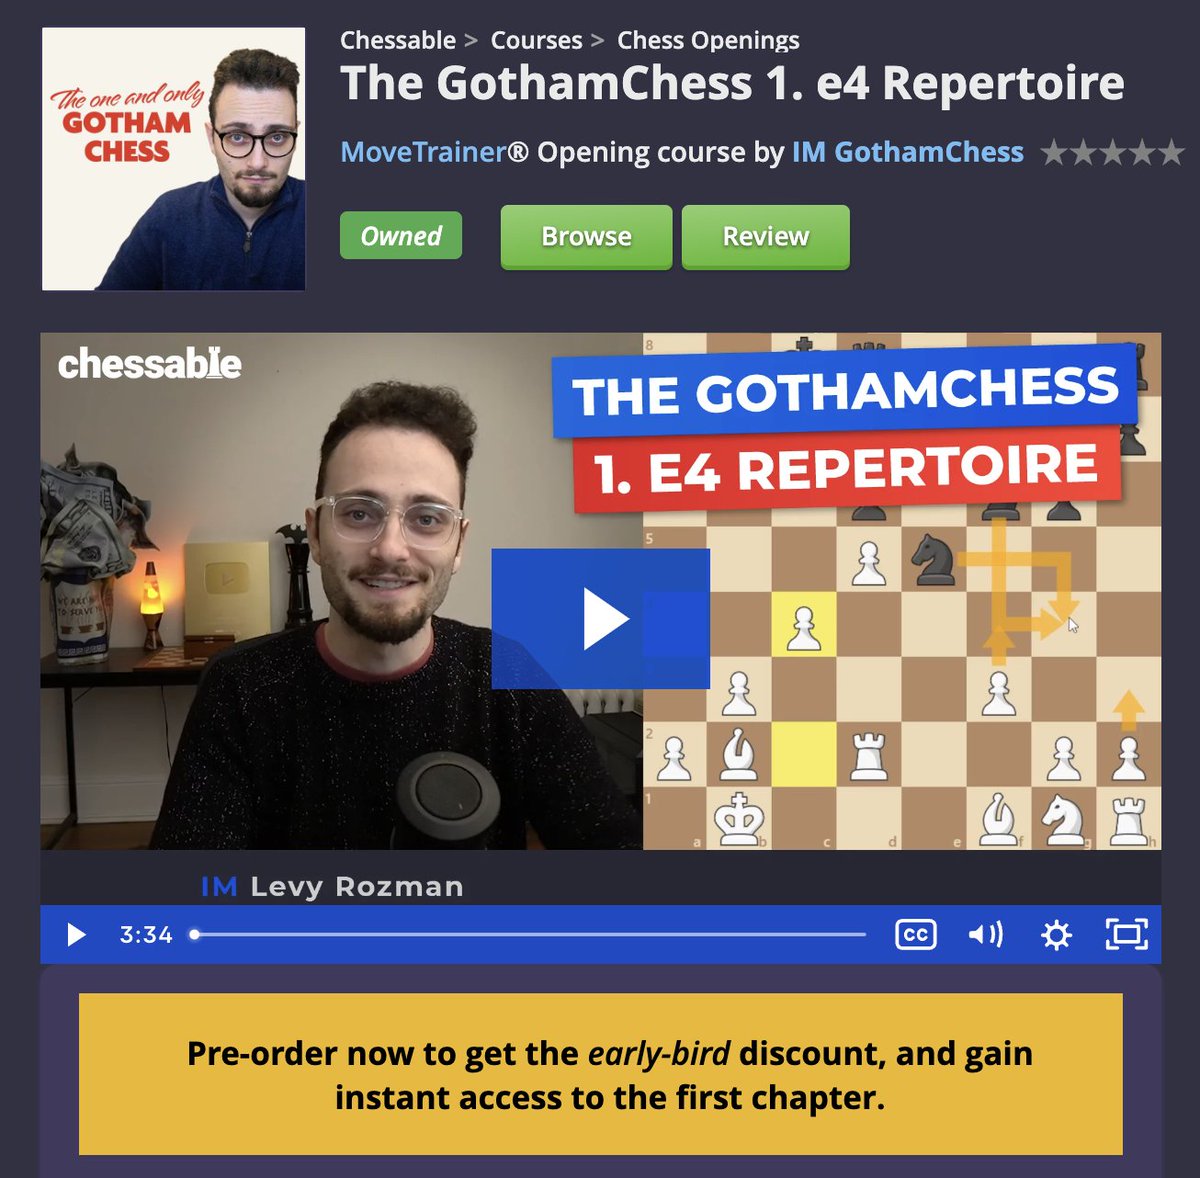 The GothamChess 1. e4 Repertoire